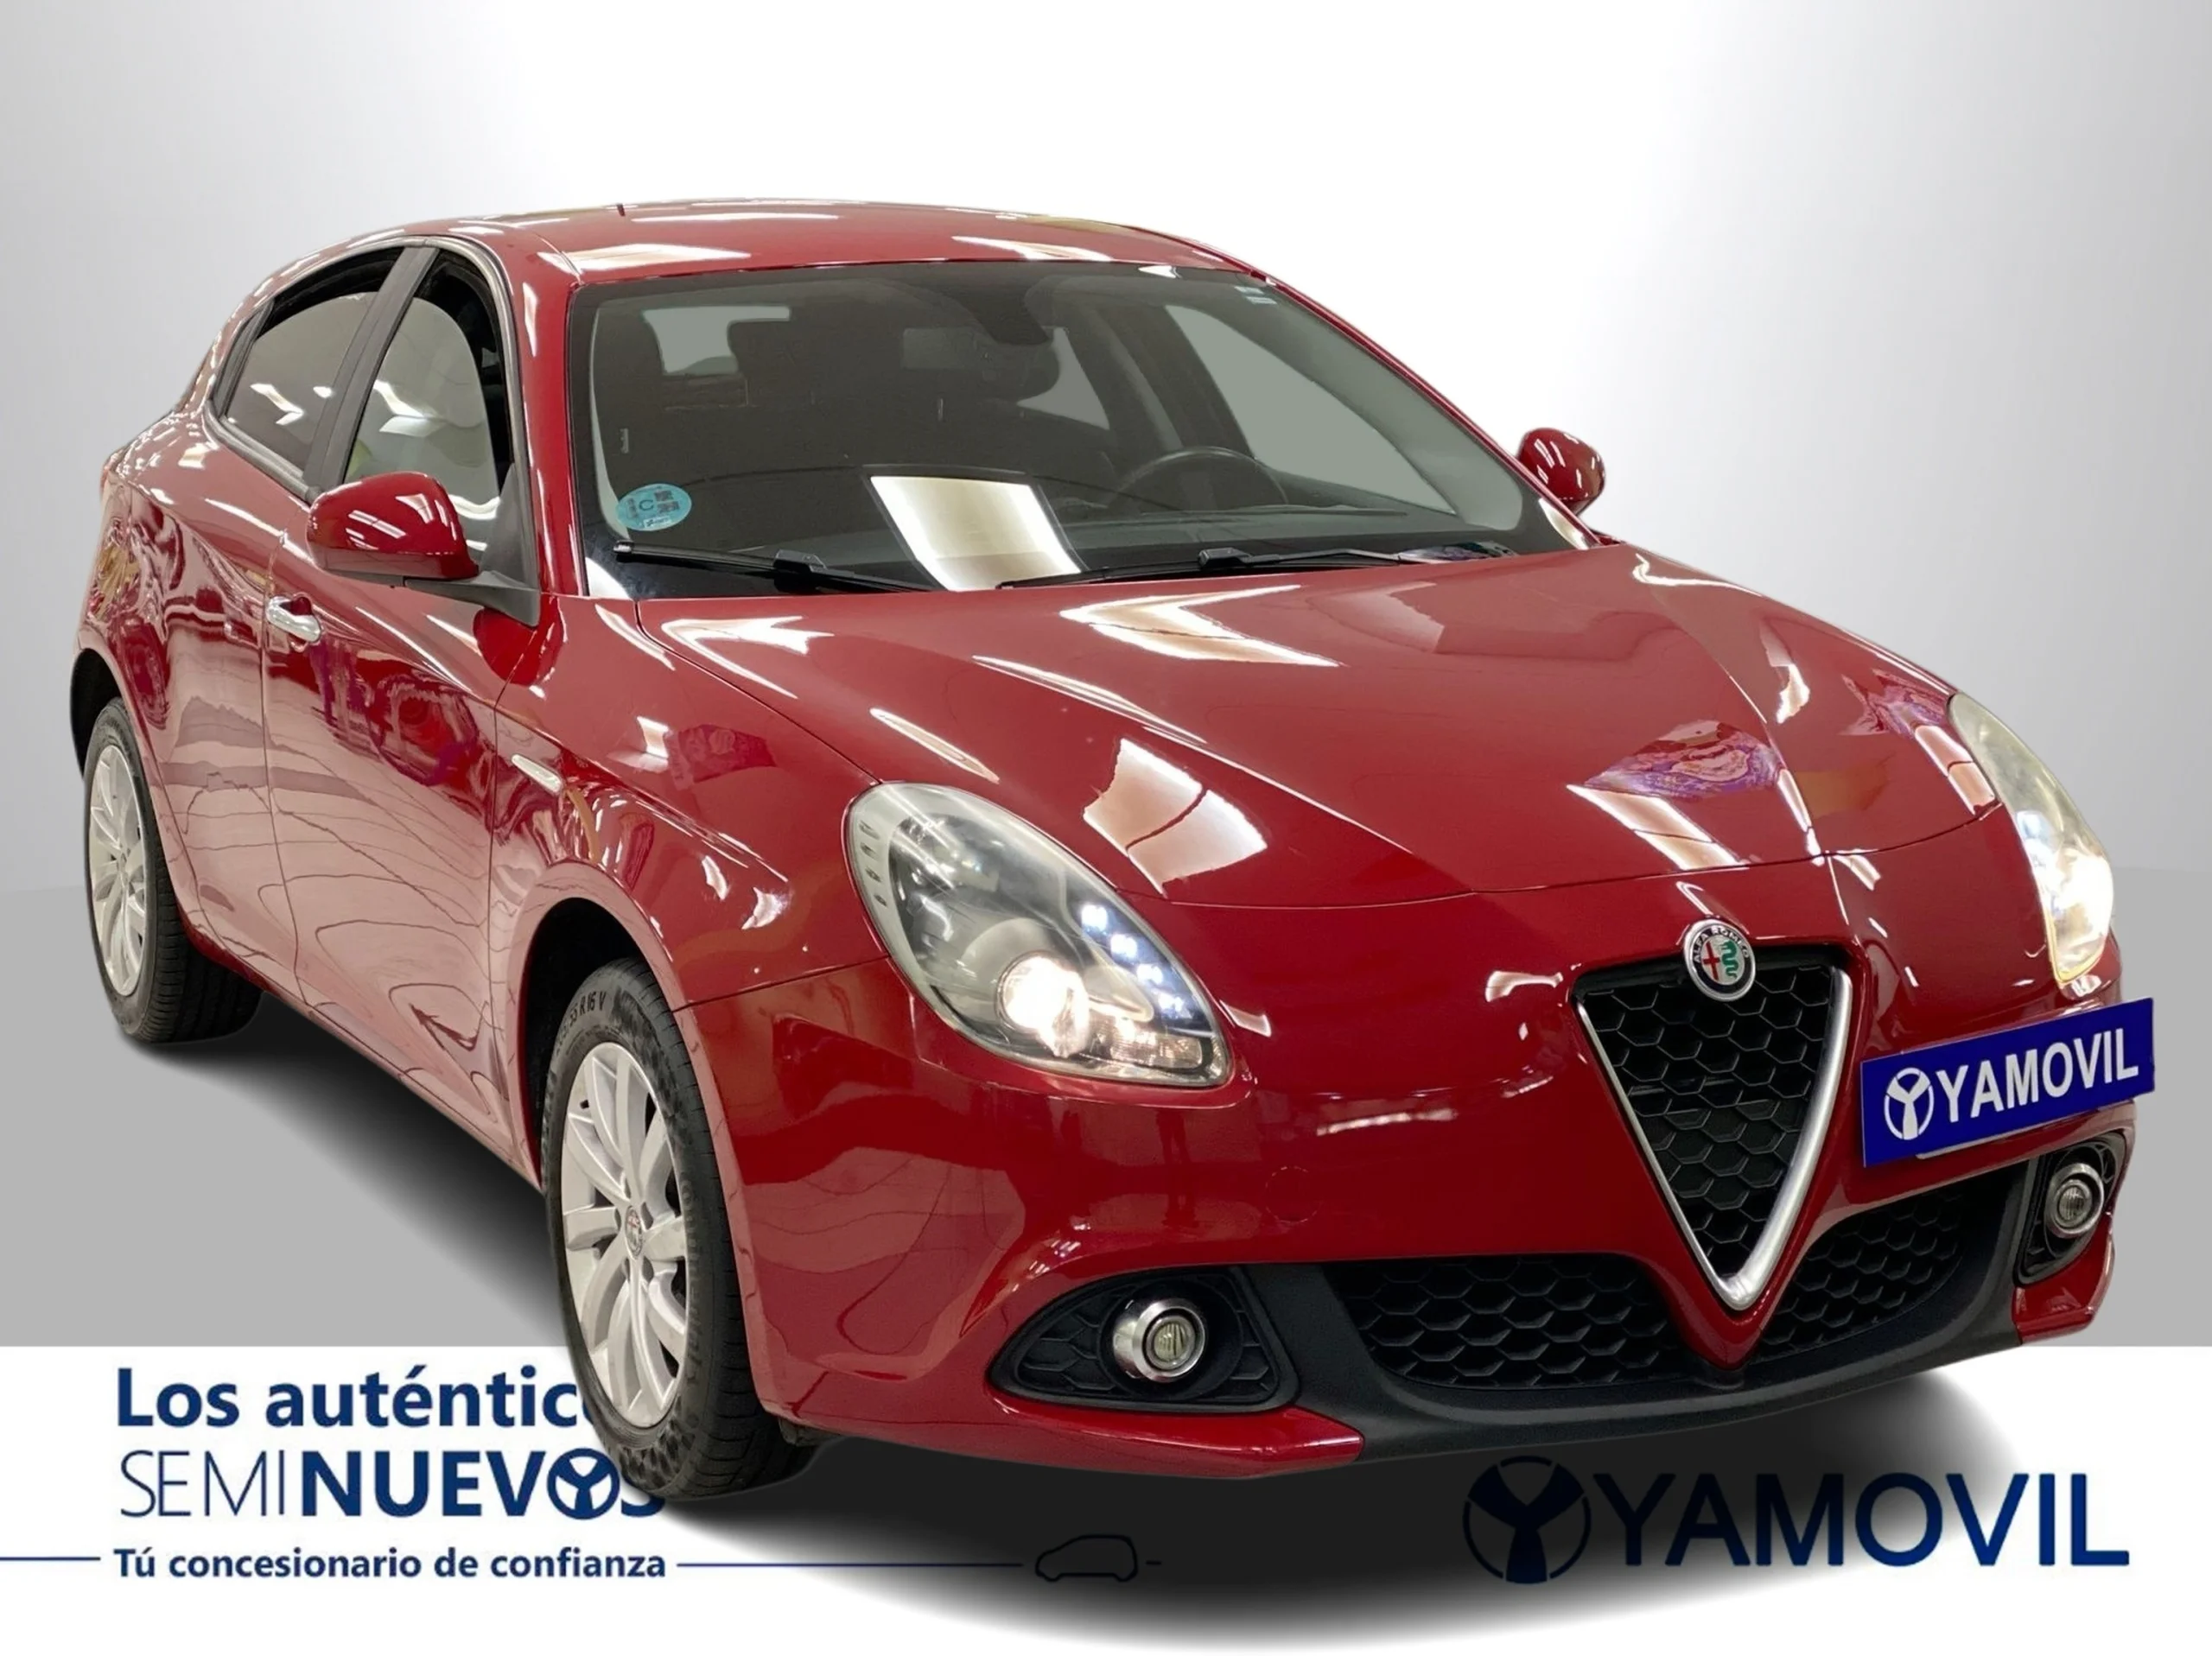 Alfa Romeo Giulietta 1.6 JTD Giulietta 88 kW (120 CV) - Foto 2